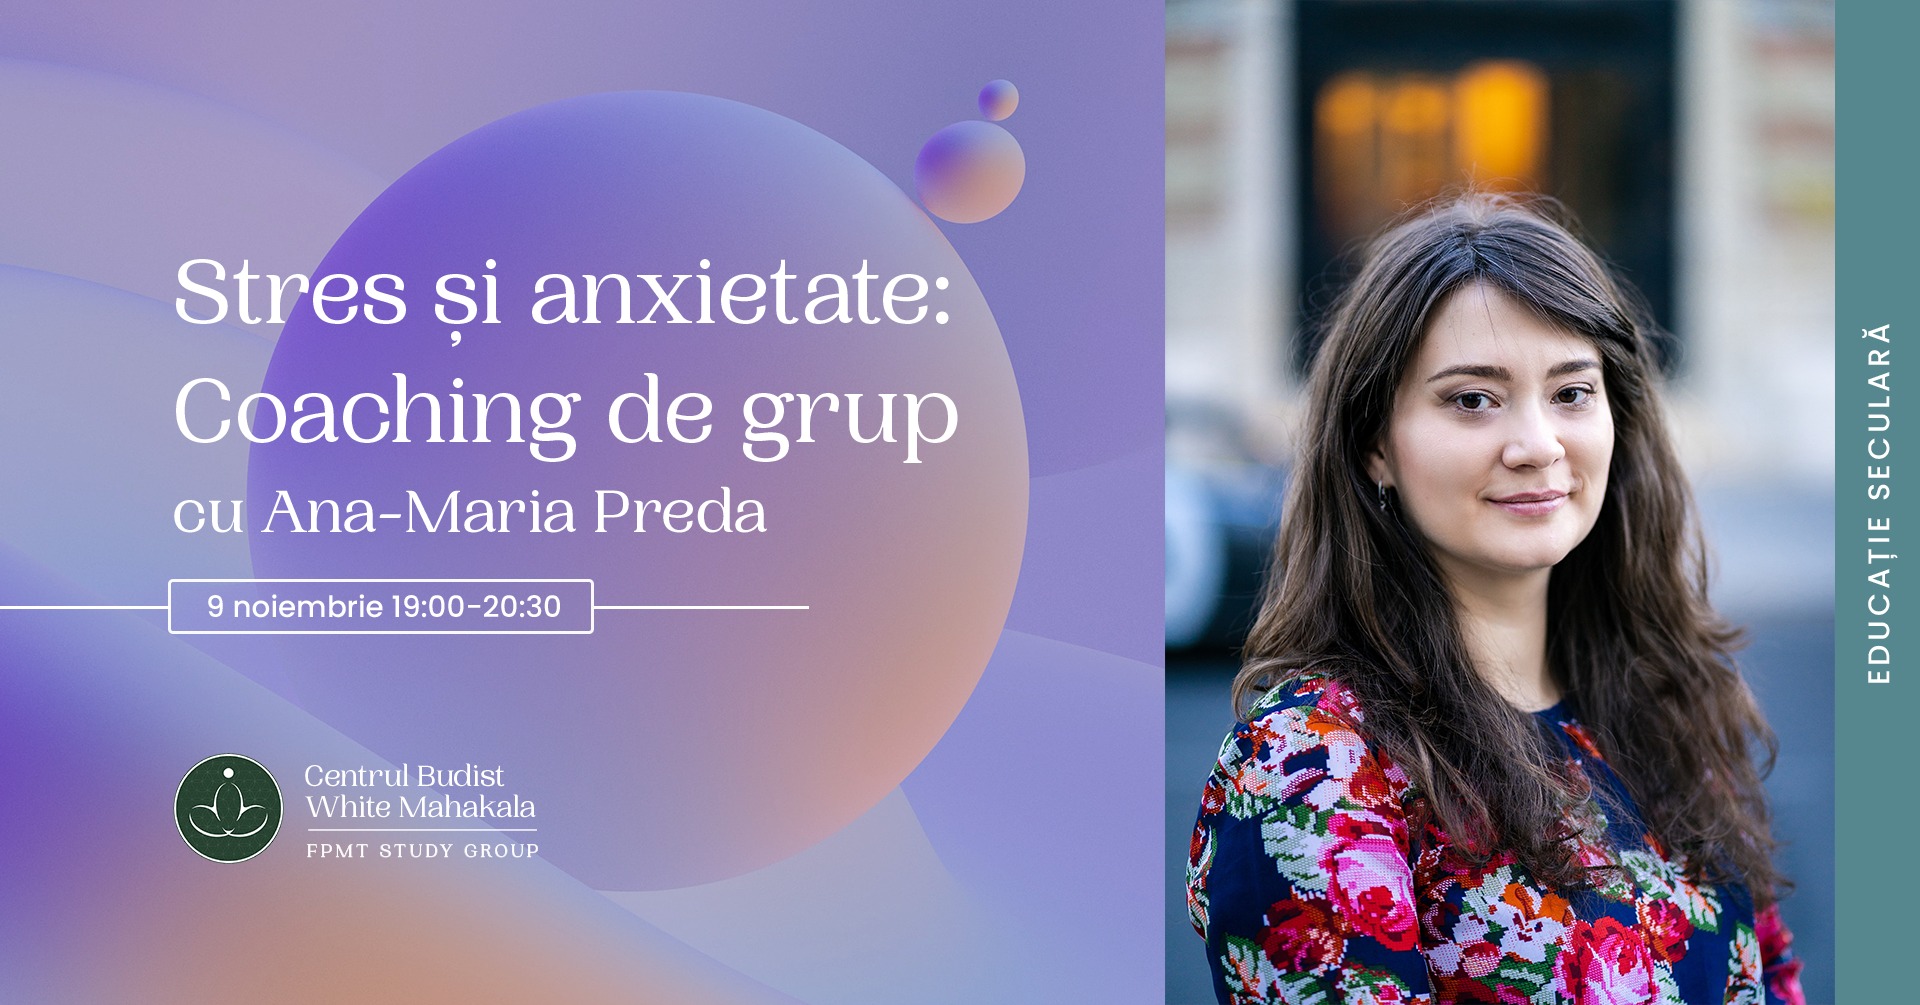 Stres și anxietate: coaching de grup cu Ana-Maria Preda